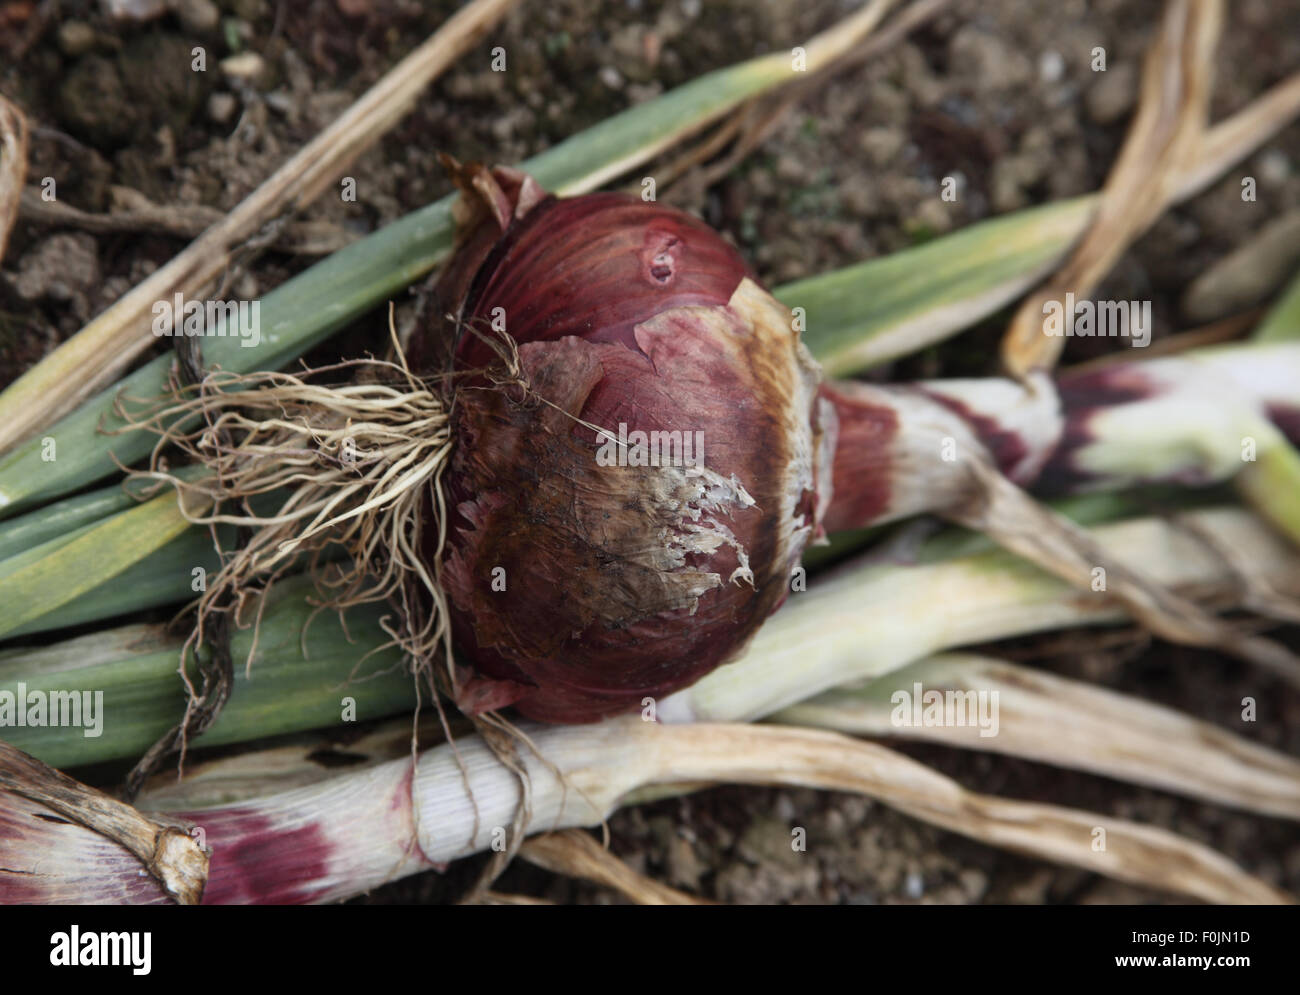 Allium cepa oignon 'Karmen' près de l'ampoule jusqu'à maturité Banque D'Images